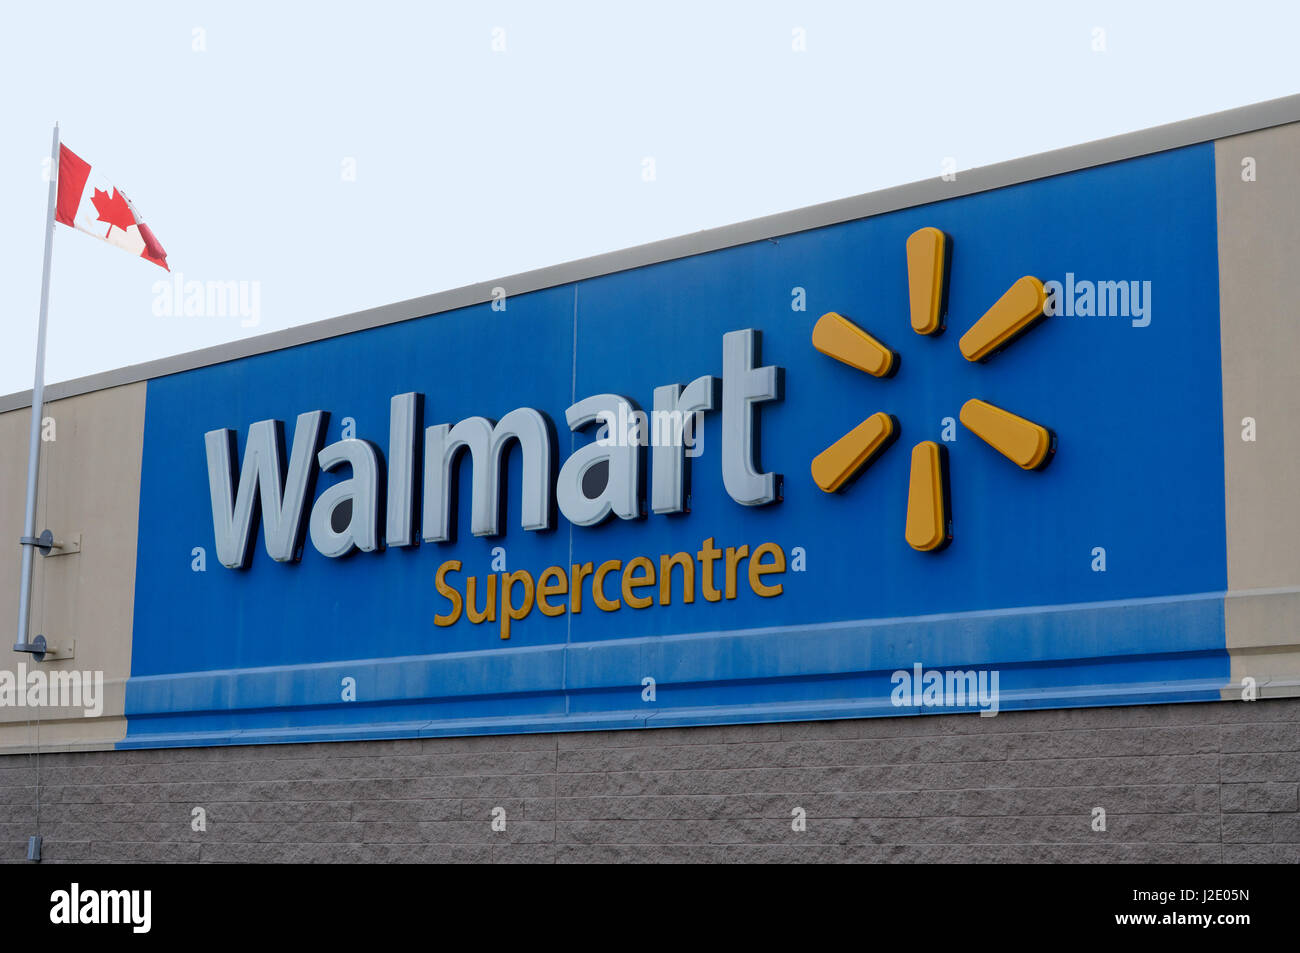 Walmart perdeu fôlego ao demorar para se adaptar ao Brasil, dizem analistas  - Época Negócios